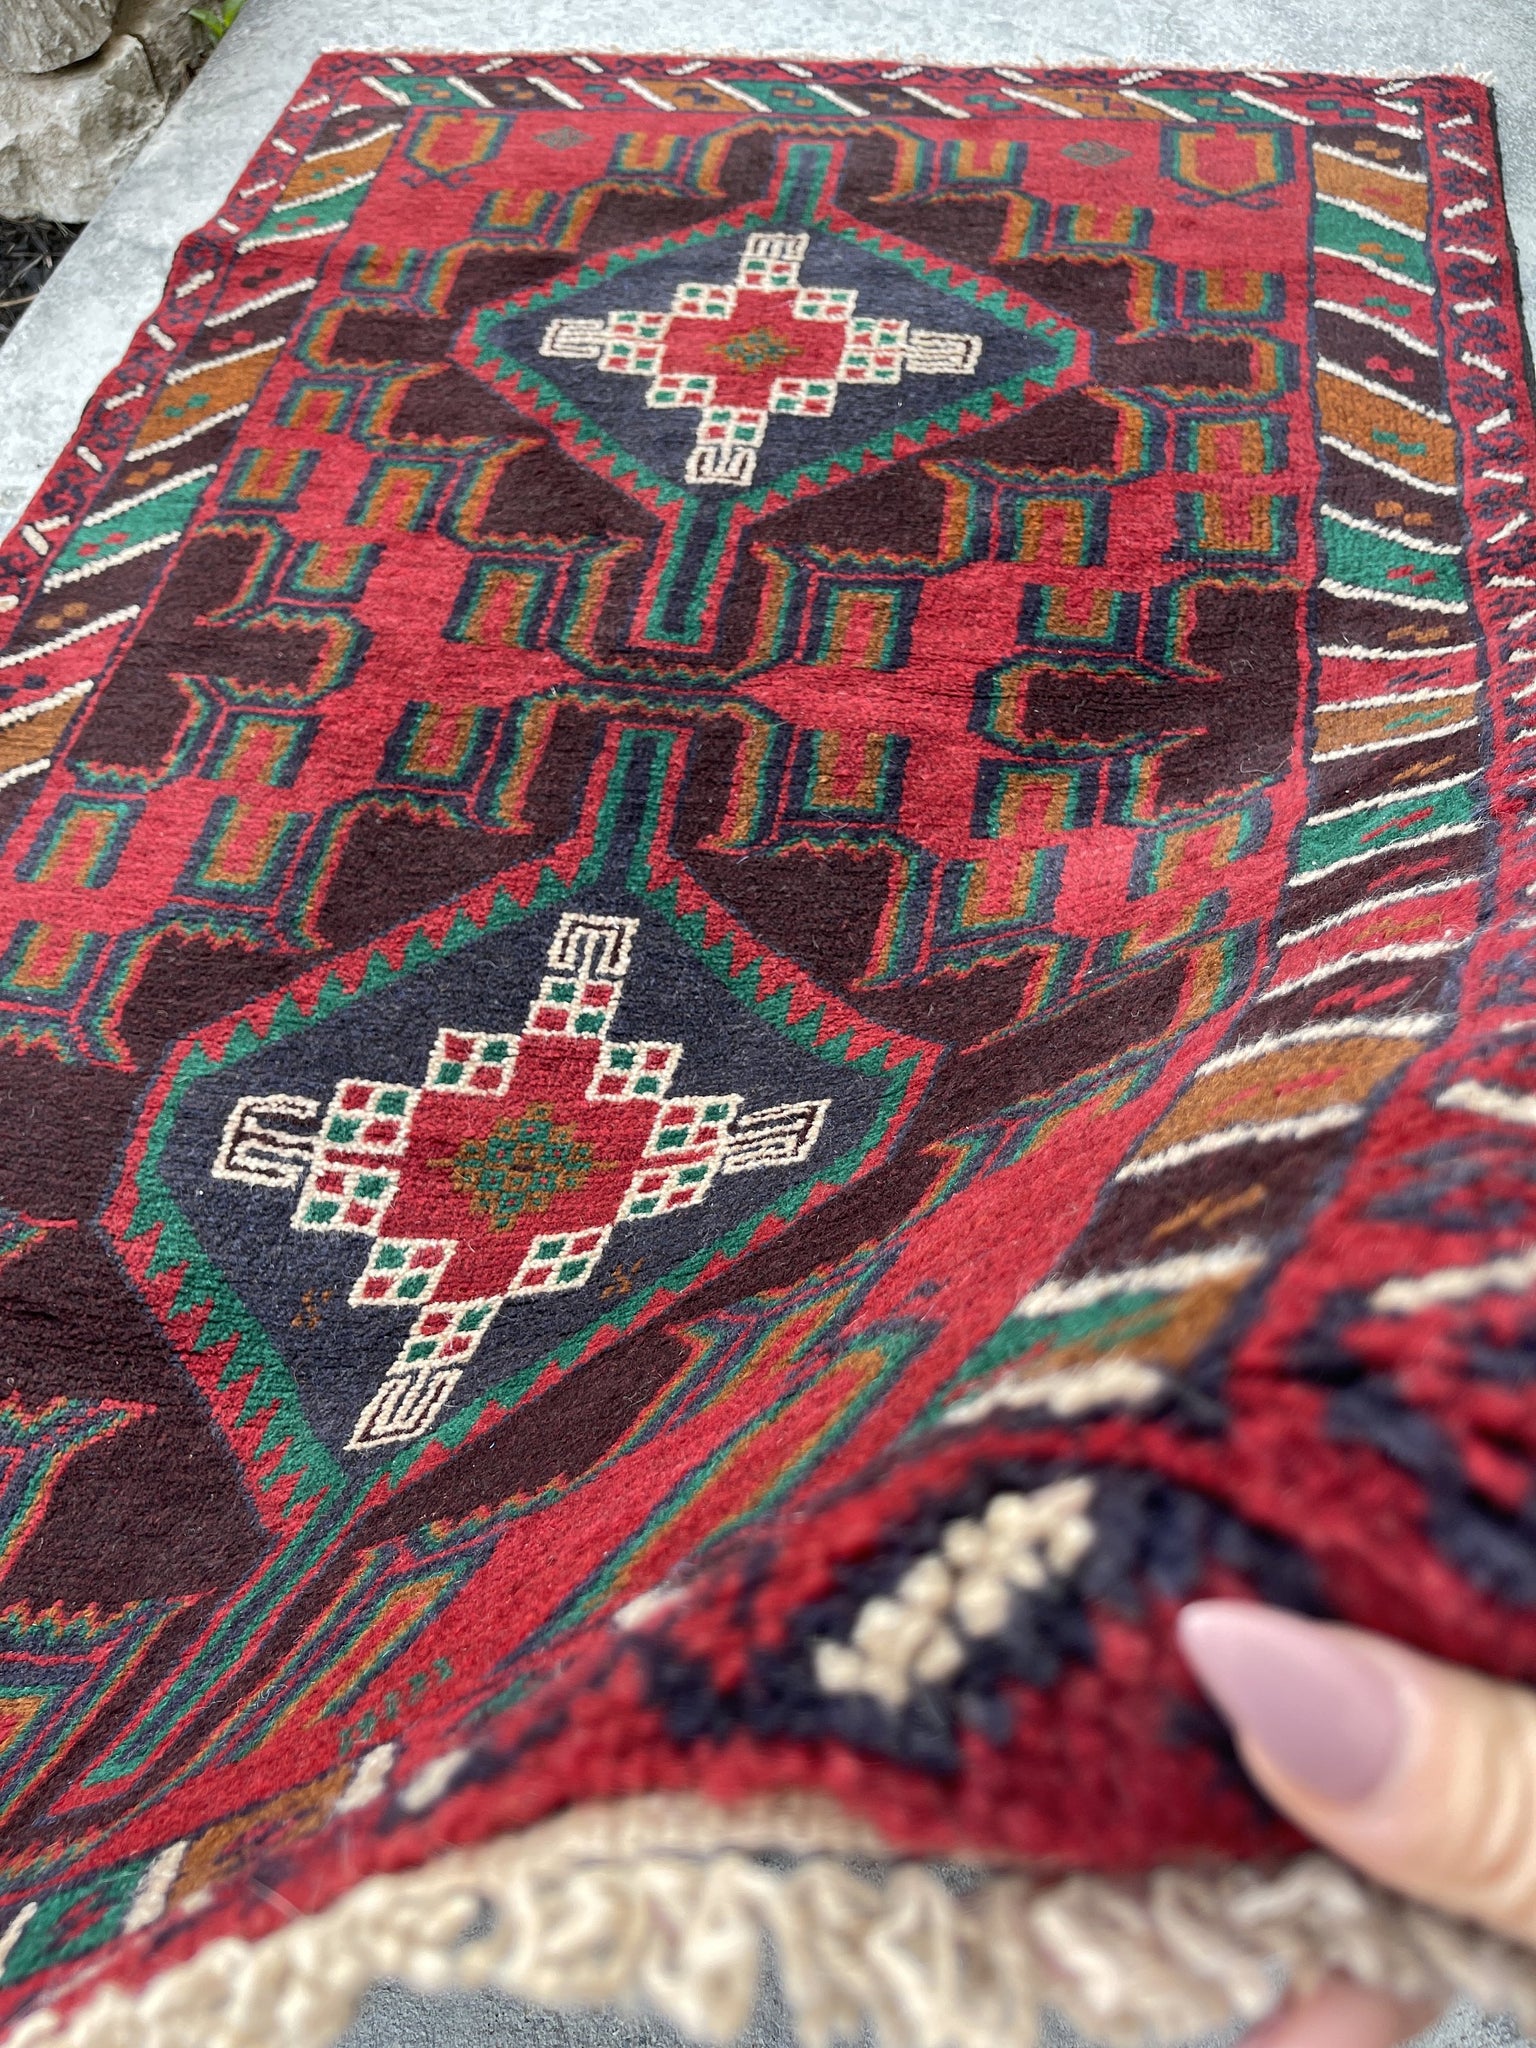 3x5 (90x150) Handmade Vintage Afghan Rug | Red Brown Indigo Green Orange | Nomadic Baluch Boho Bohemian Tribal Turkish Moroccan Wool